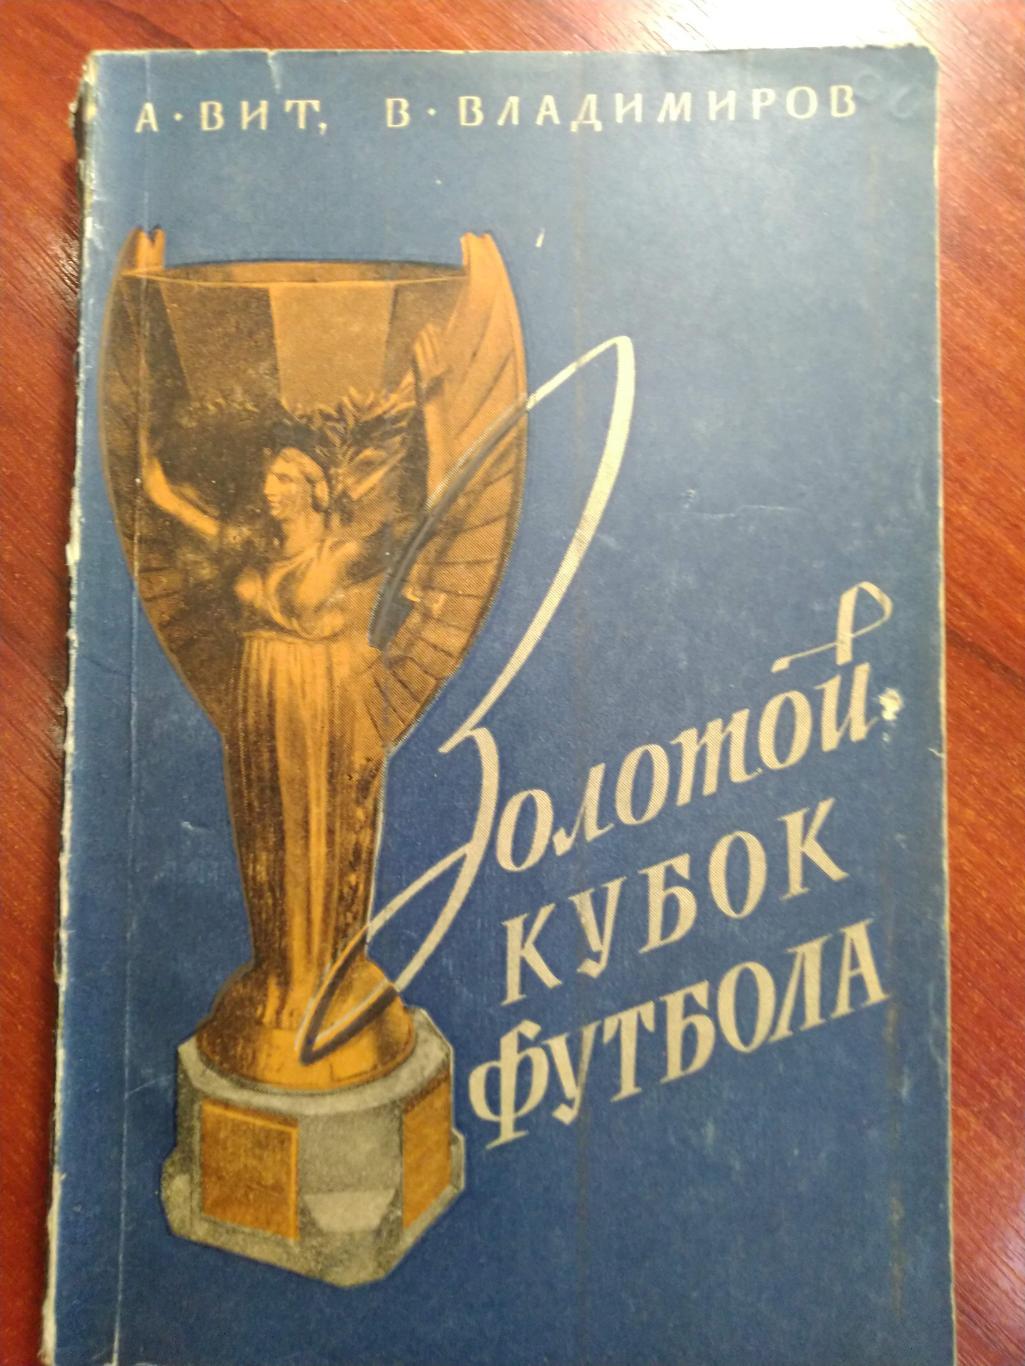 Золотой Кубок футбола А.Вит , В. Владимиров Москва 1958